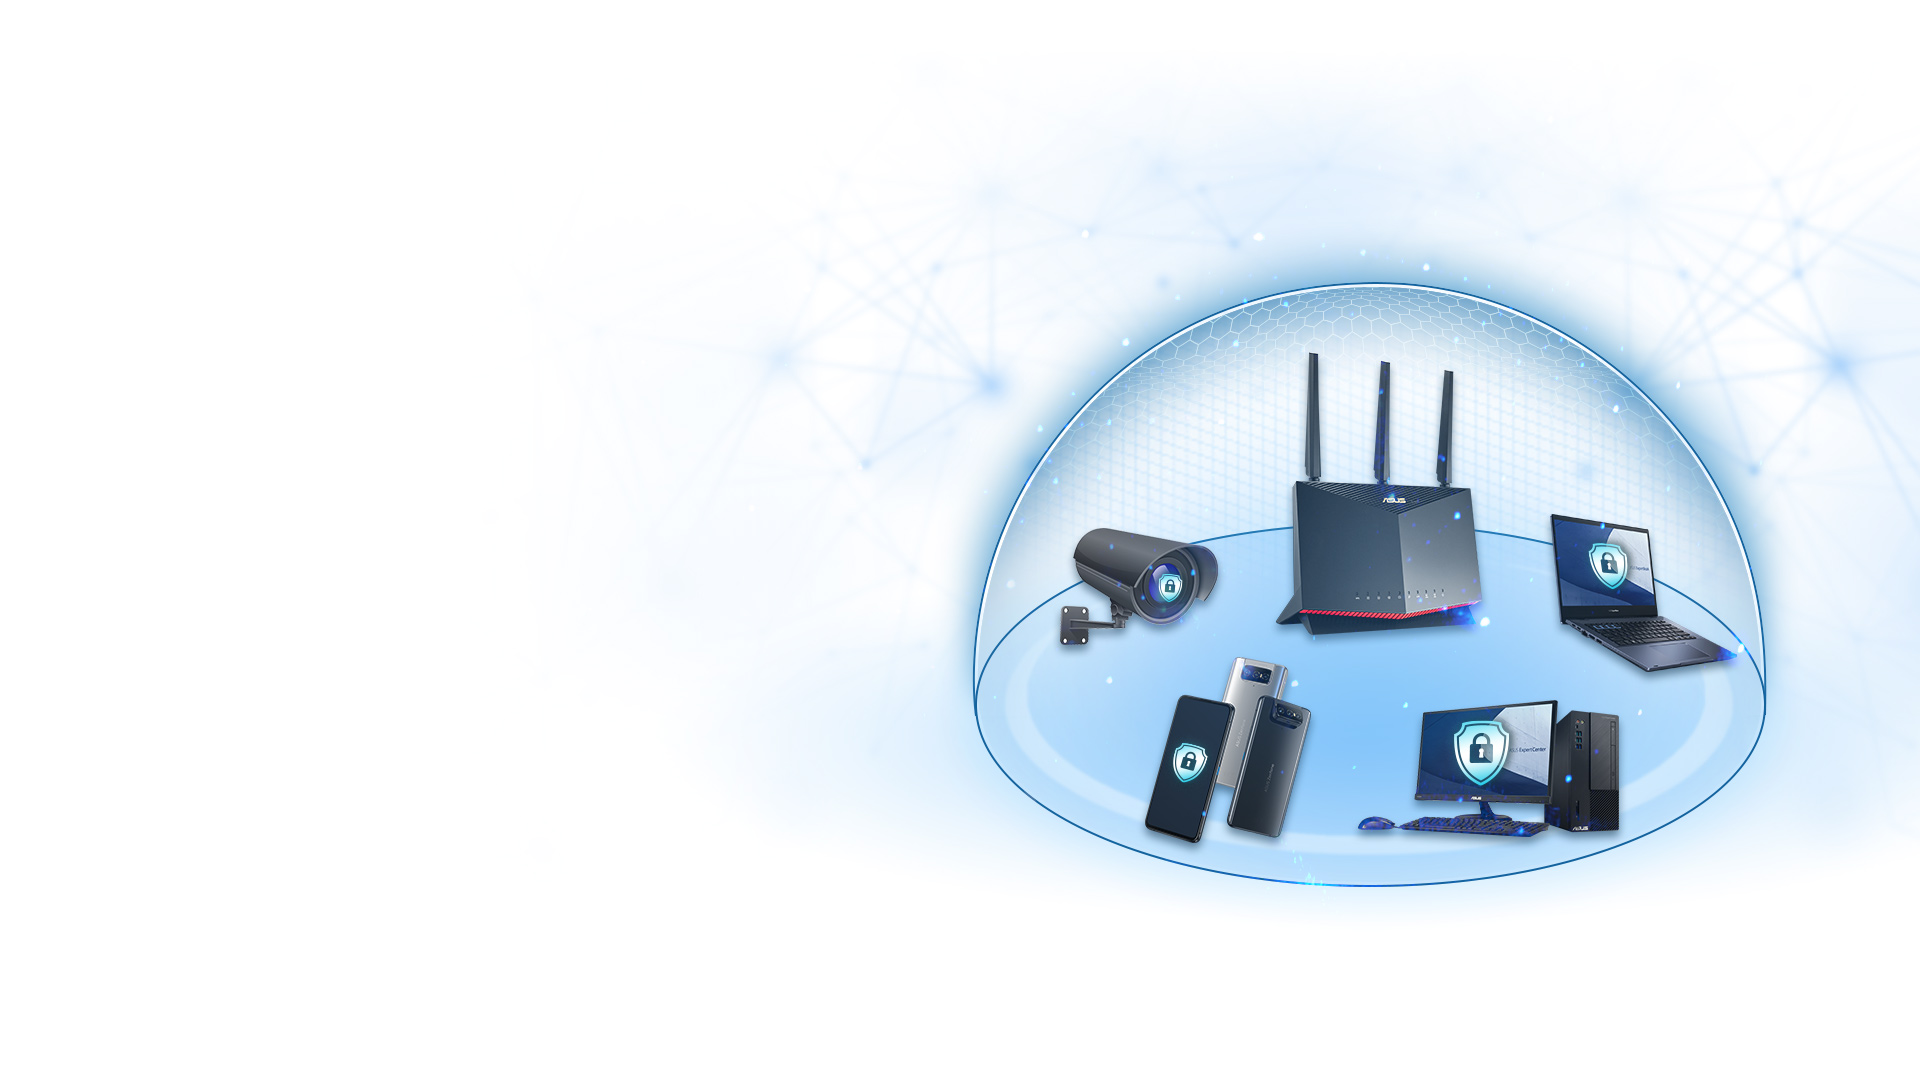 Większość routerów ASUS dysponuje technologią AiProtection napędzaną przez Trend Micro™, która zapewnia ochronę każdego urządzenia w Twojej sieci biznesowej 